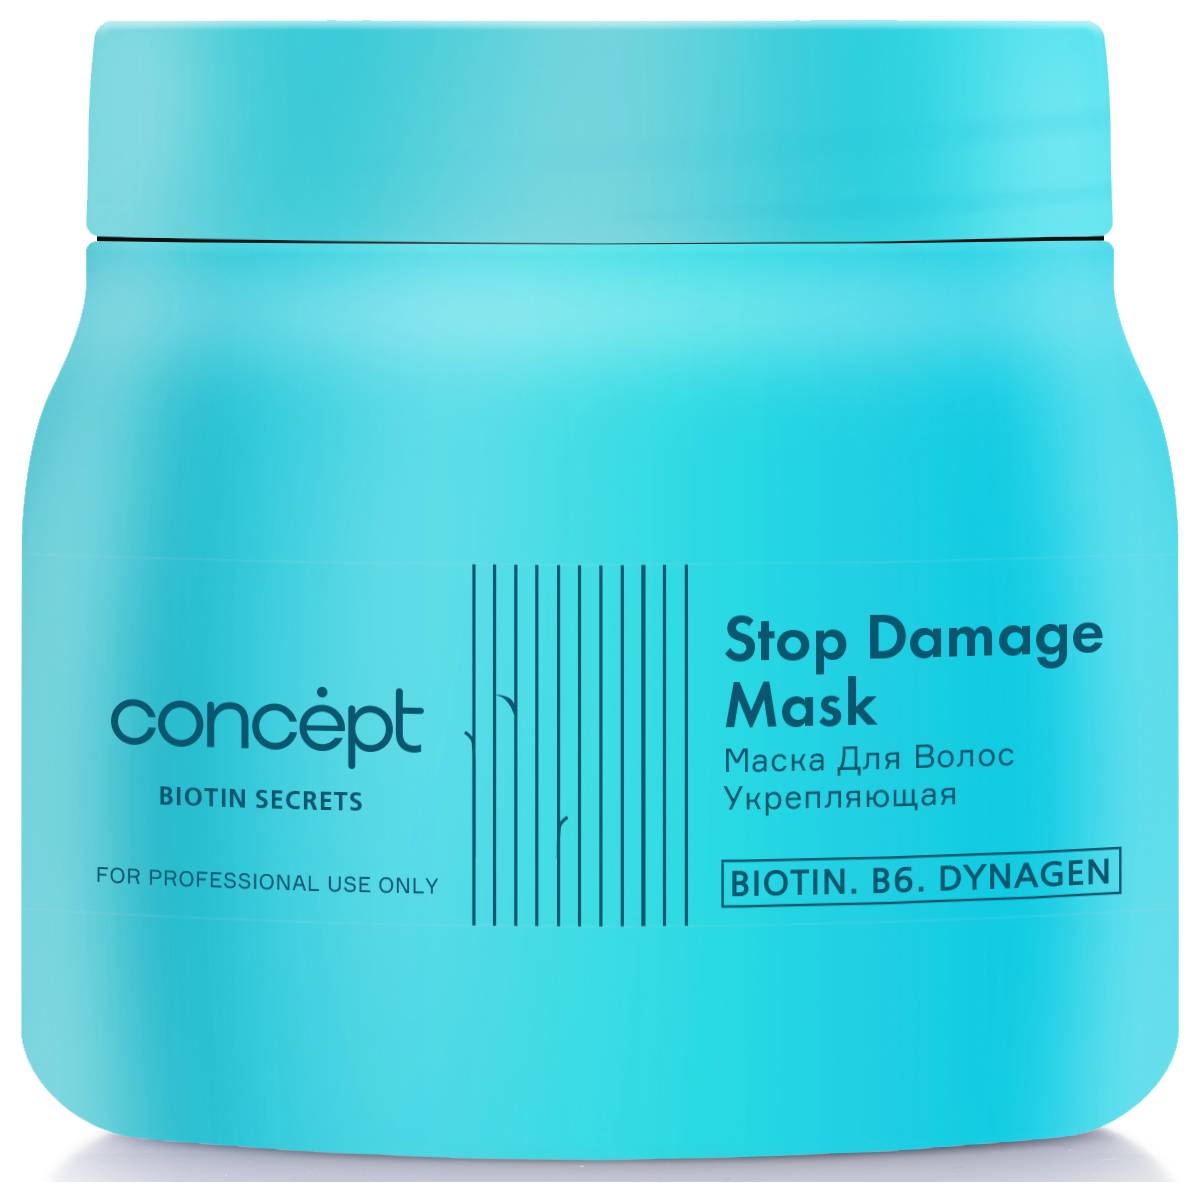 Damage маска для волос. Concept Biotin Secret. Маска для волос Concept. Маска концепт увлажняющая. Маска для волос концепт для блондинок.